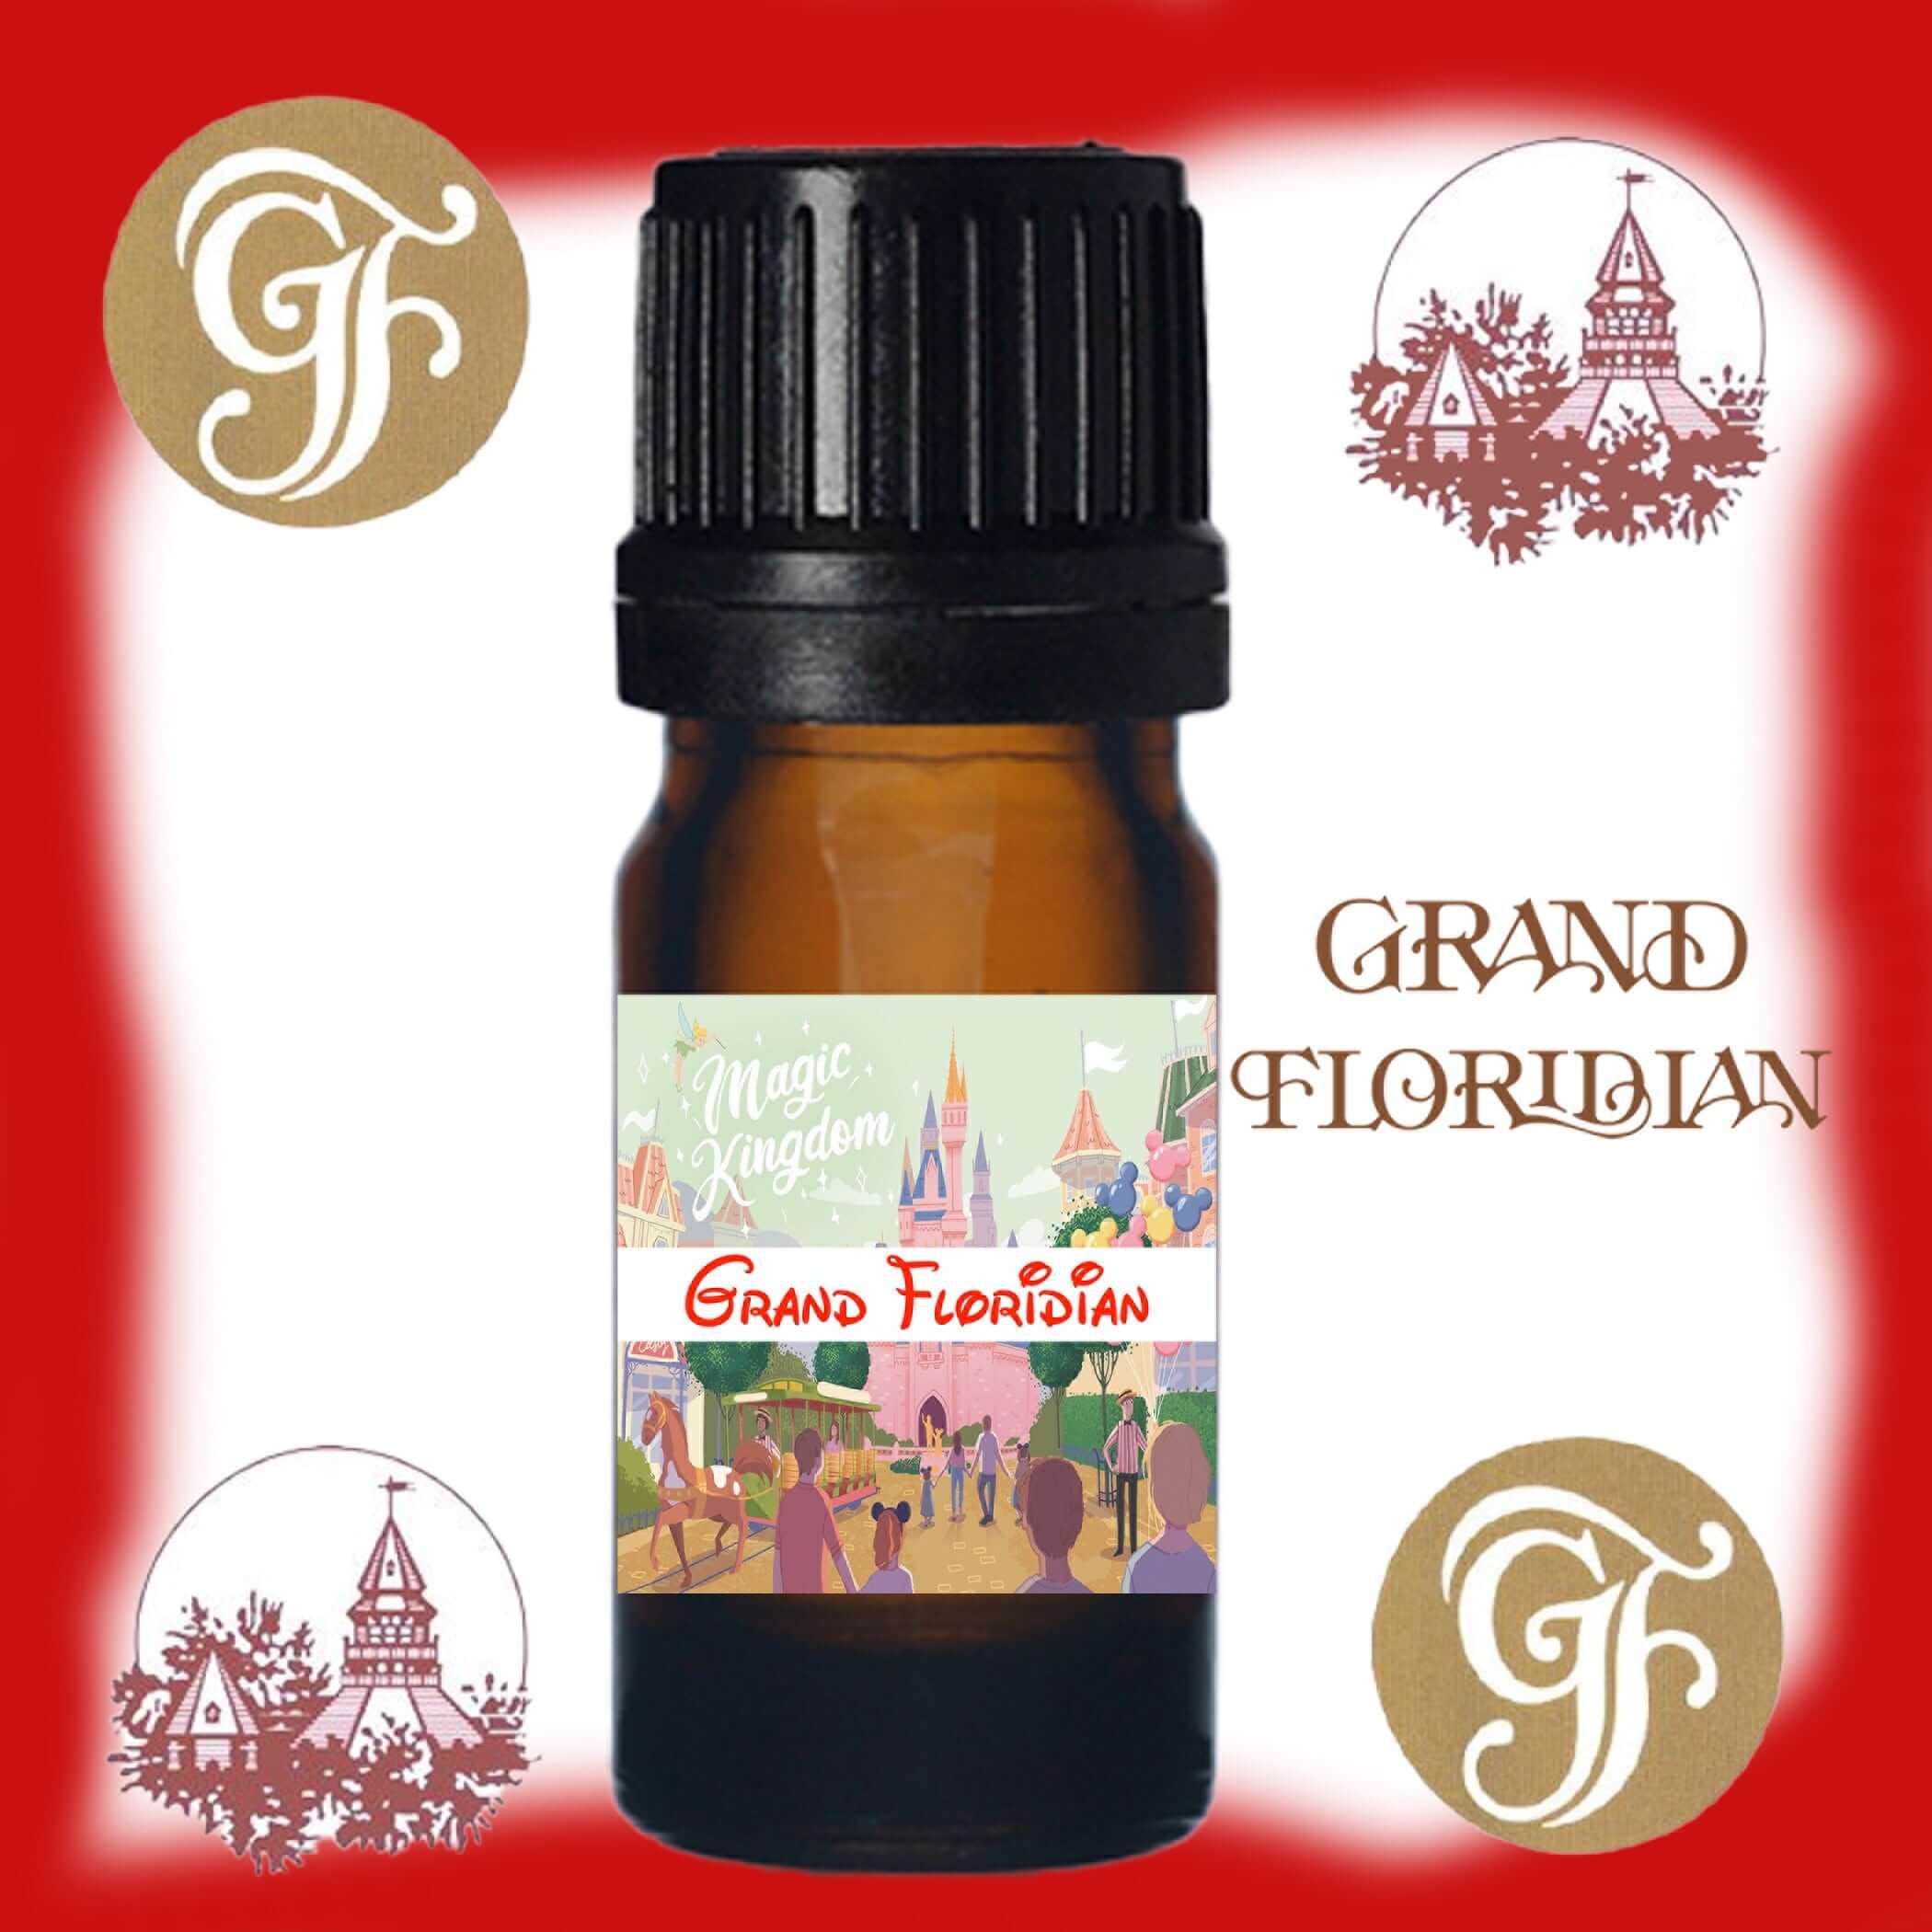 Grand Floridian Resort Fragrance Oil Dropper...